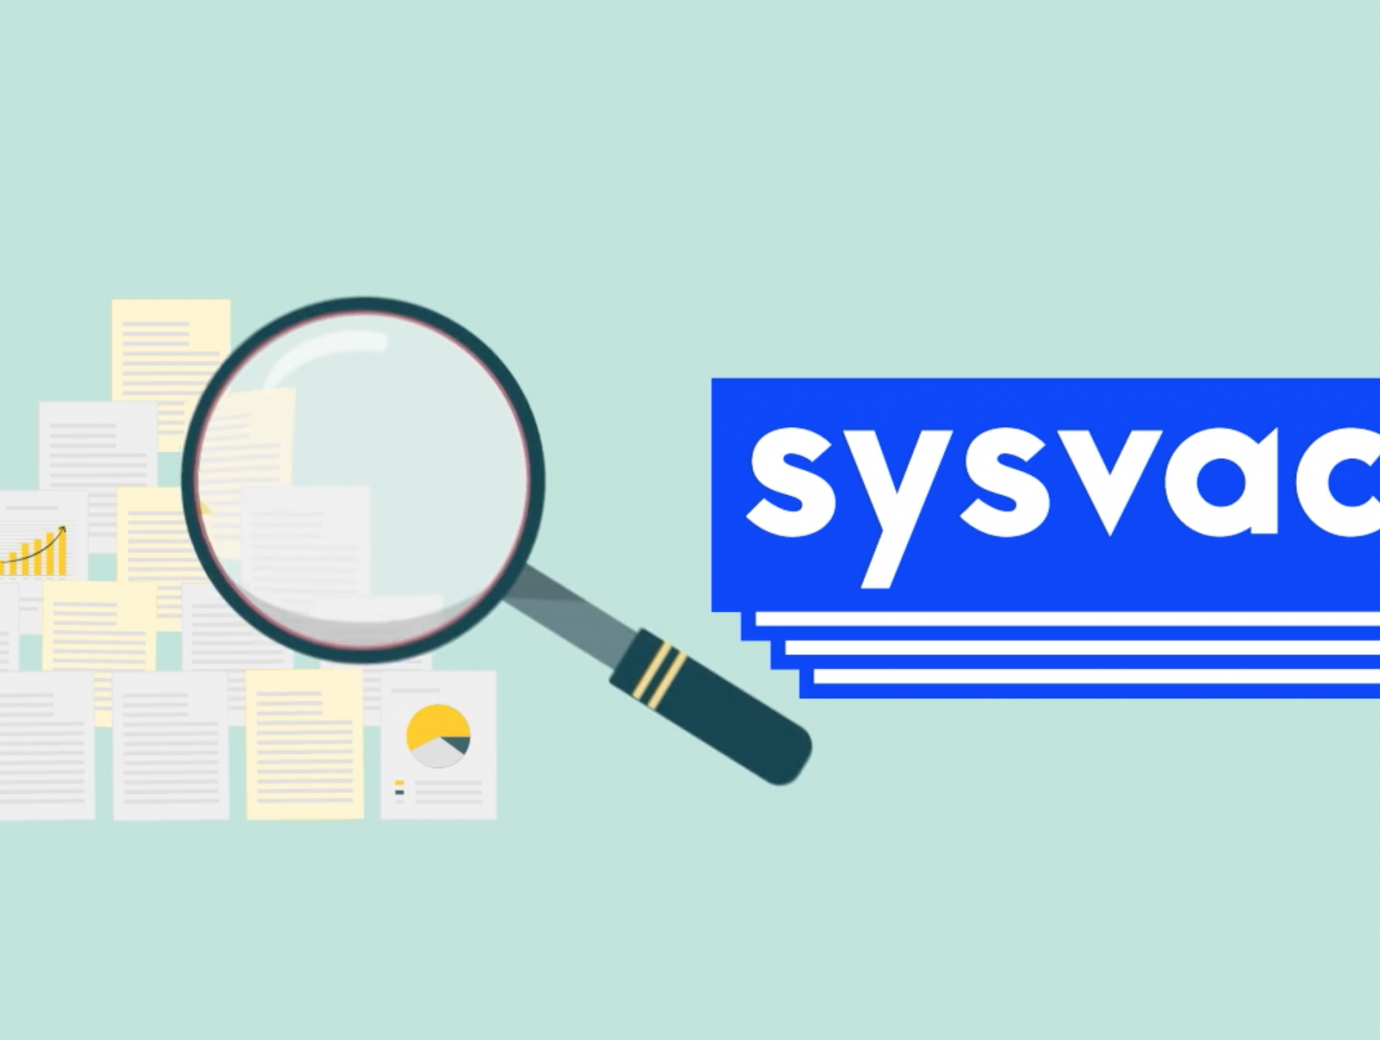 sysvac logo